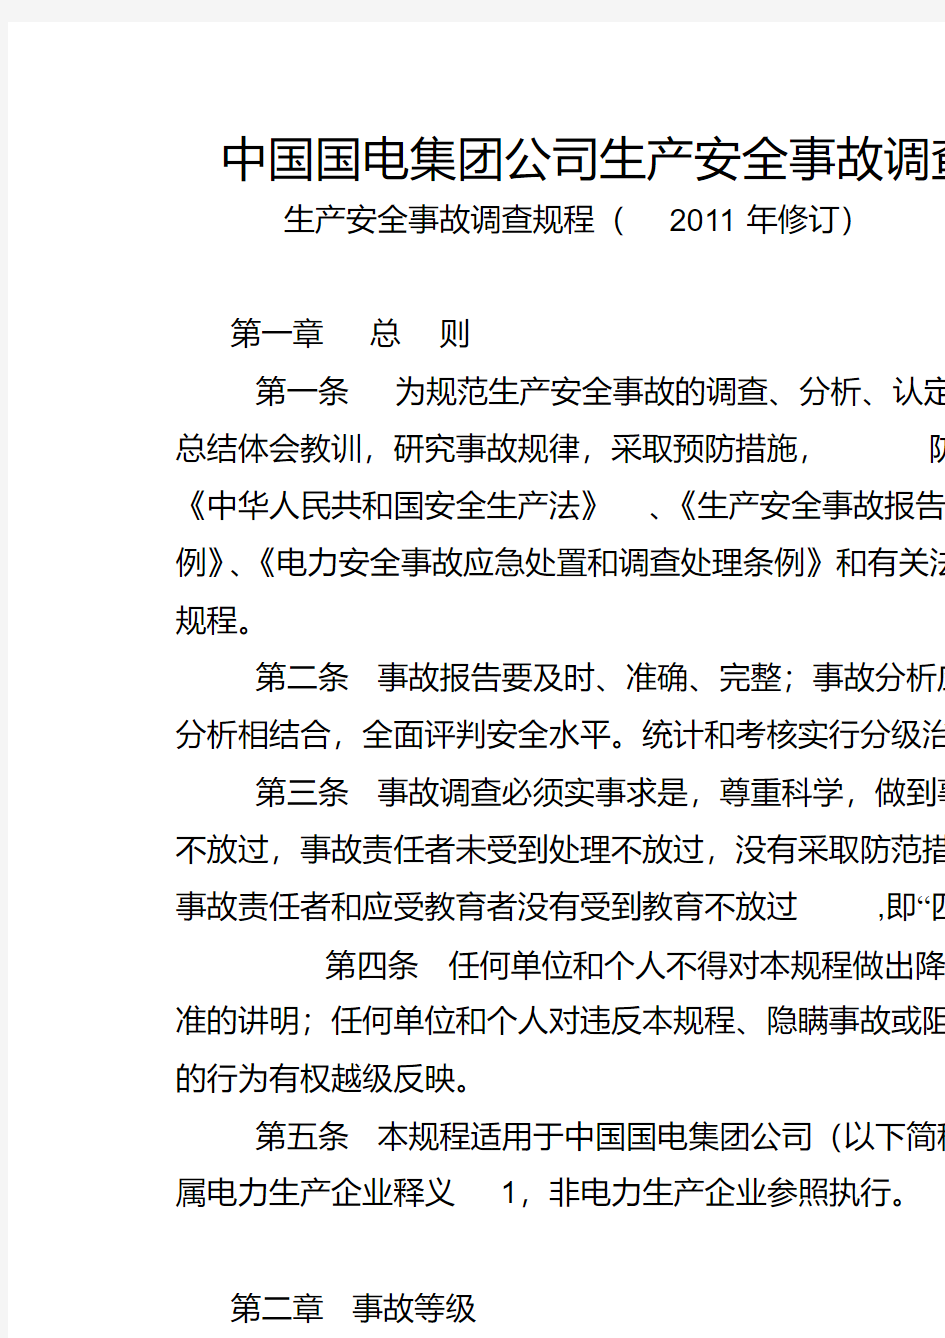 中国国电集团公司生产安全事故调查规程